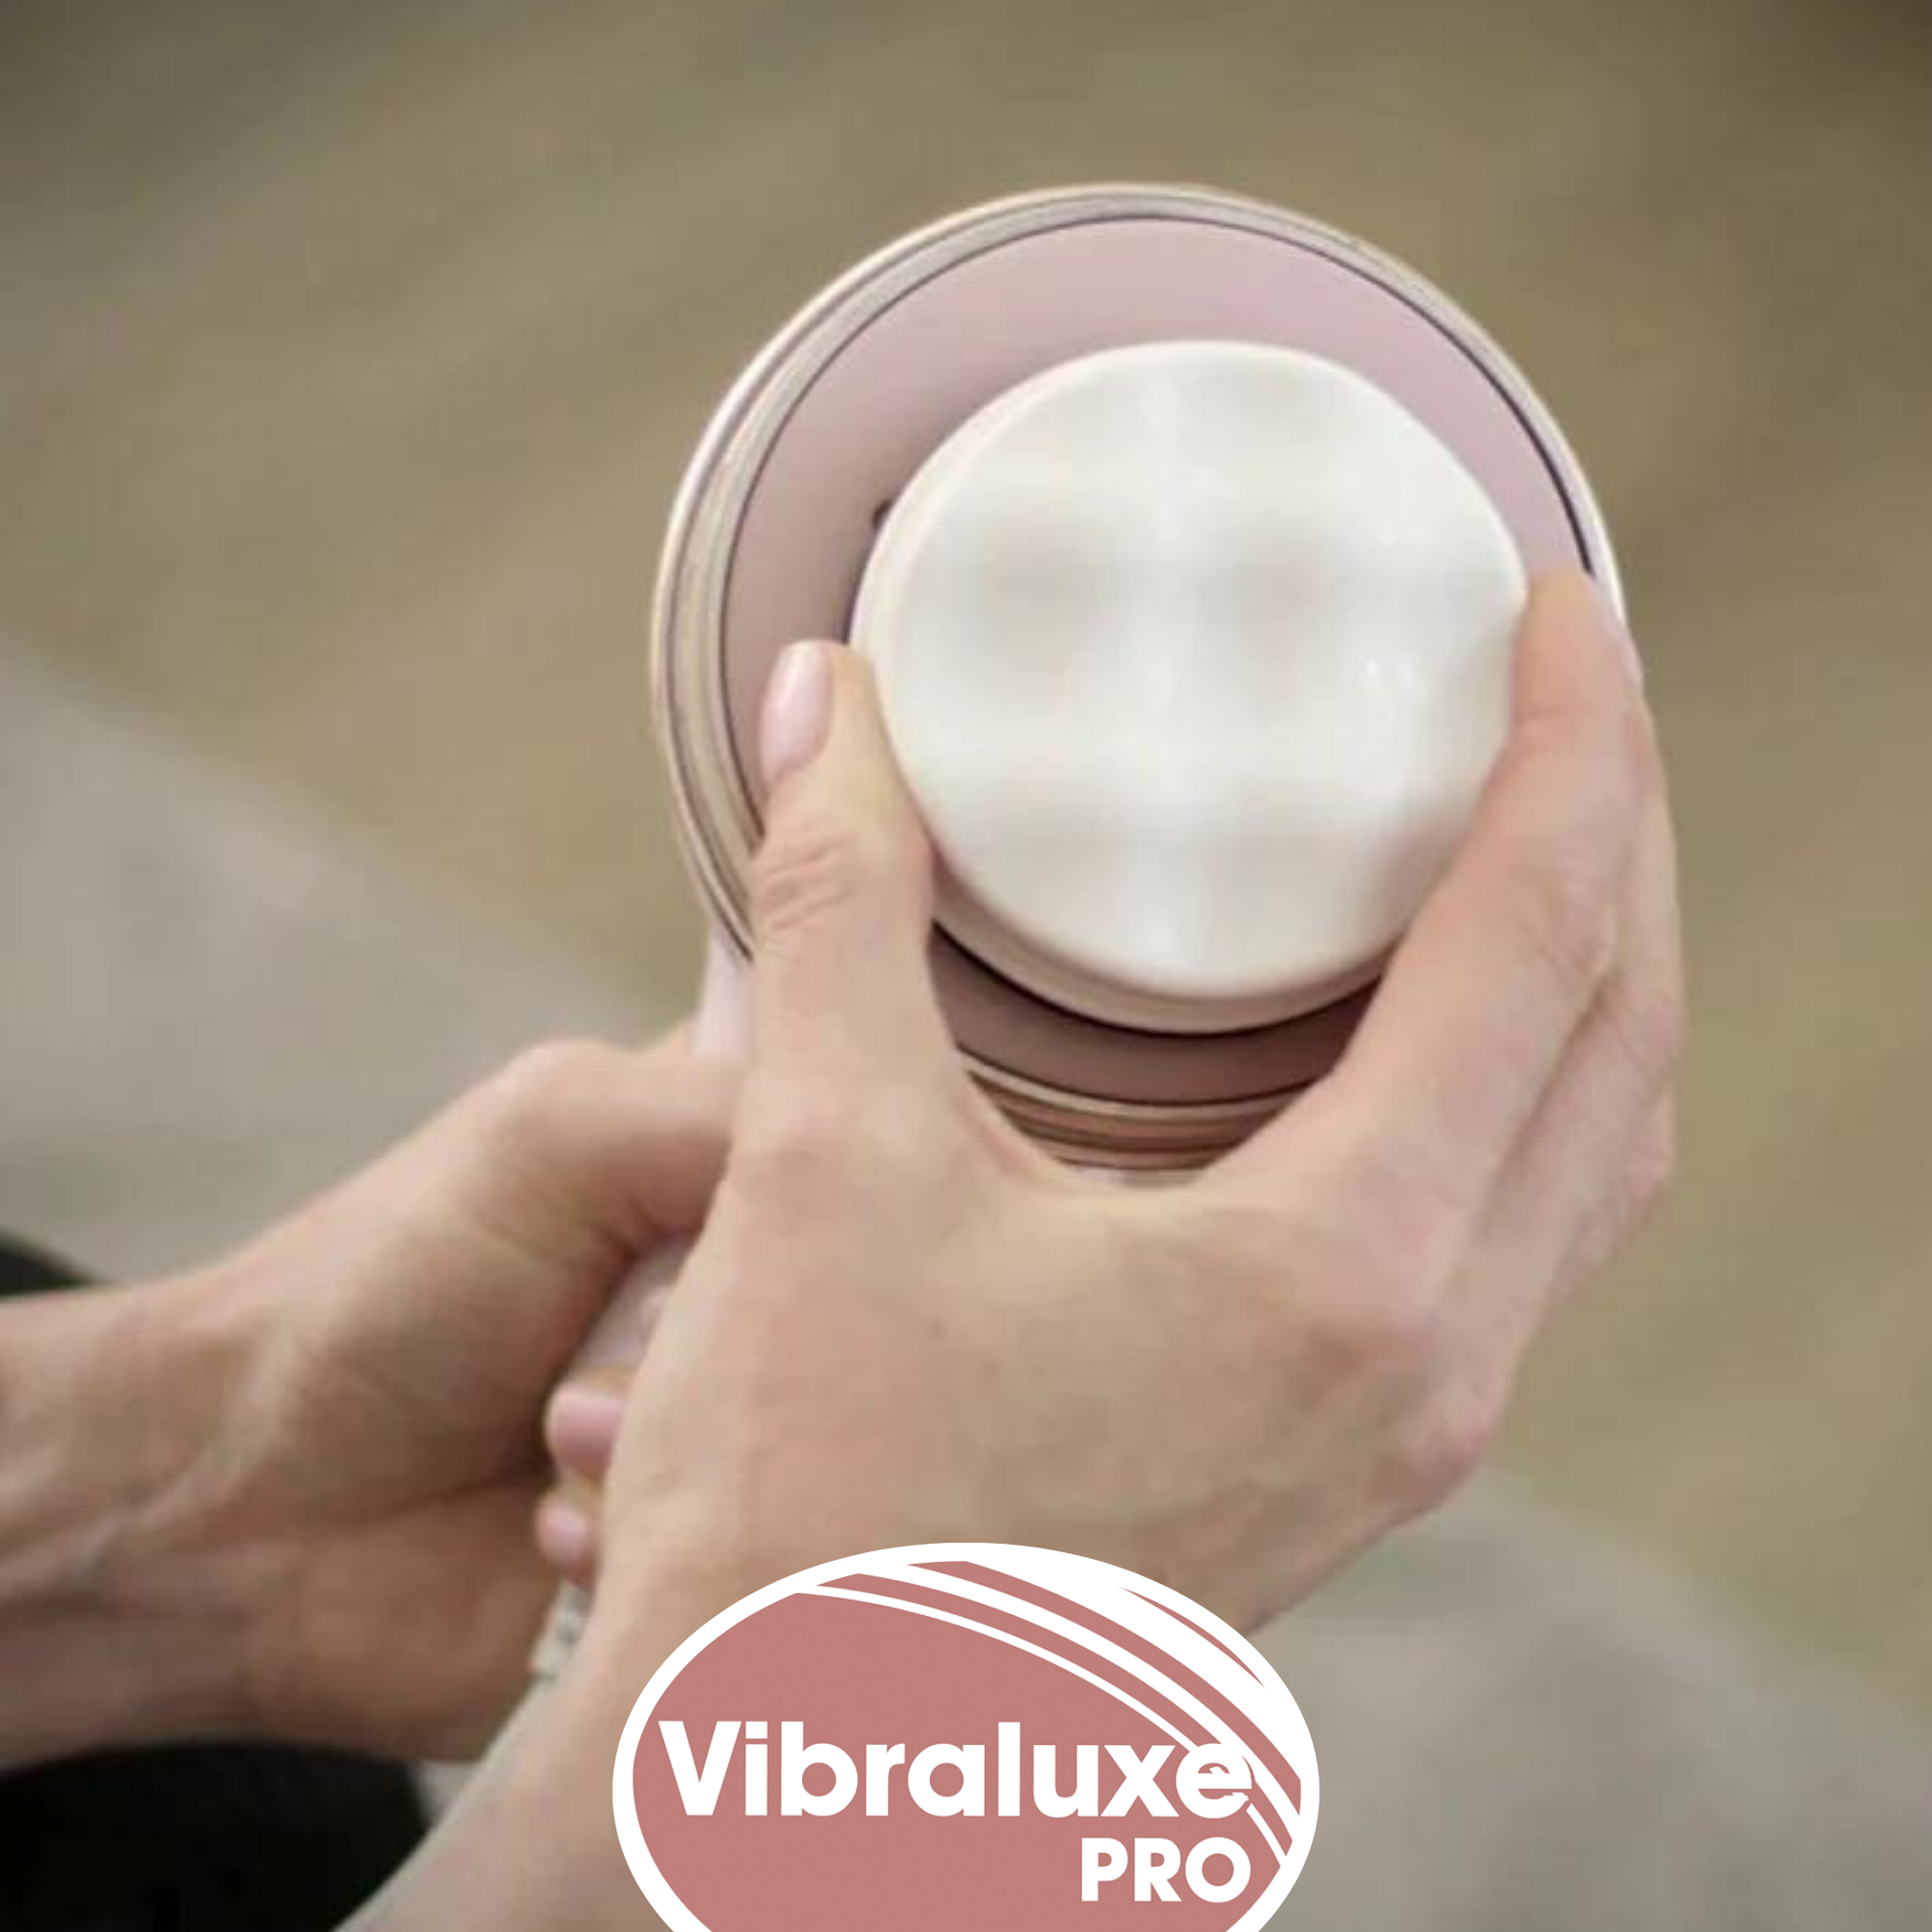 Pro für Vibralux INDUSTEX Massagegerät Damen Massagegerät Gold